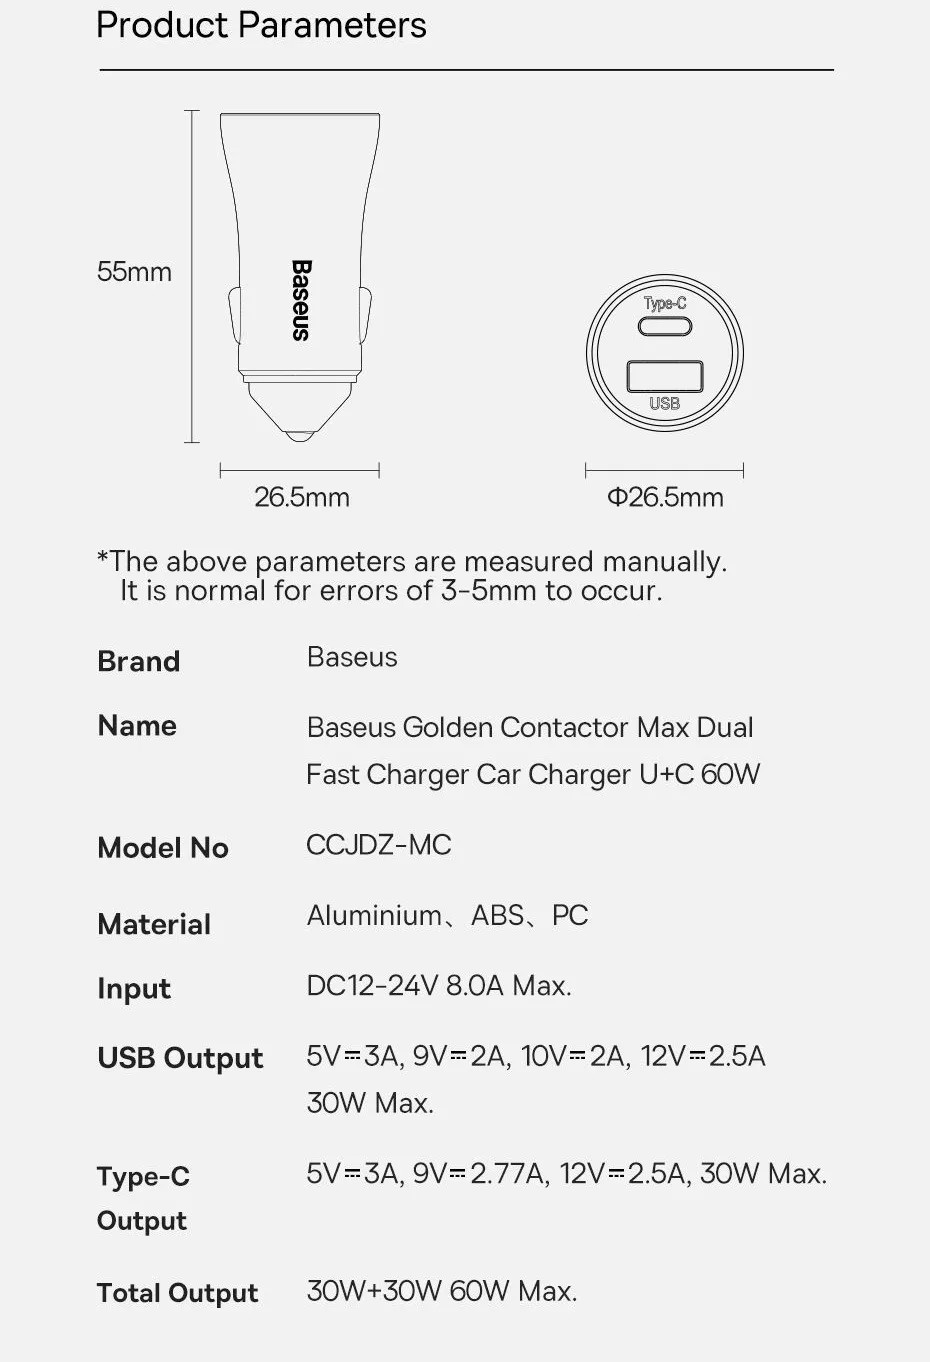 Tẩu củ sạc nhanh 60W cổng PD Type-C và USB hiệu Baseus Goldern Contactor Pro Max cho xe hơi / xe ô tô